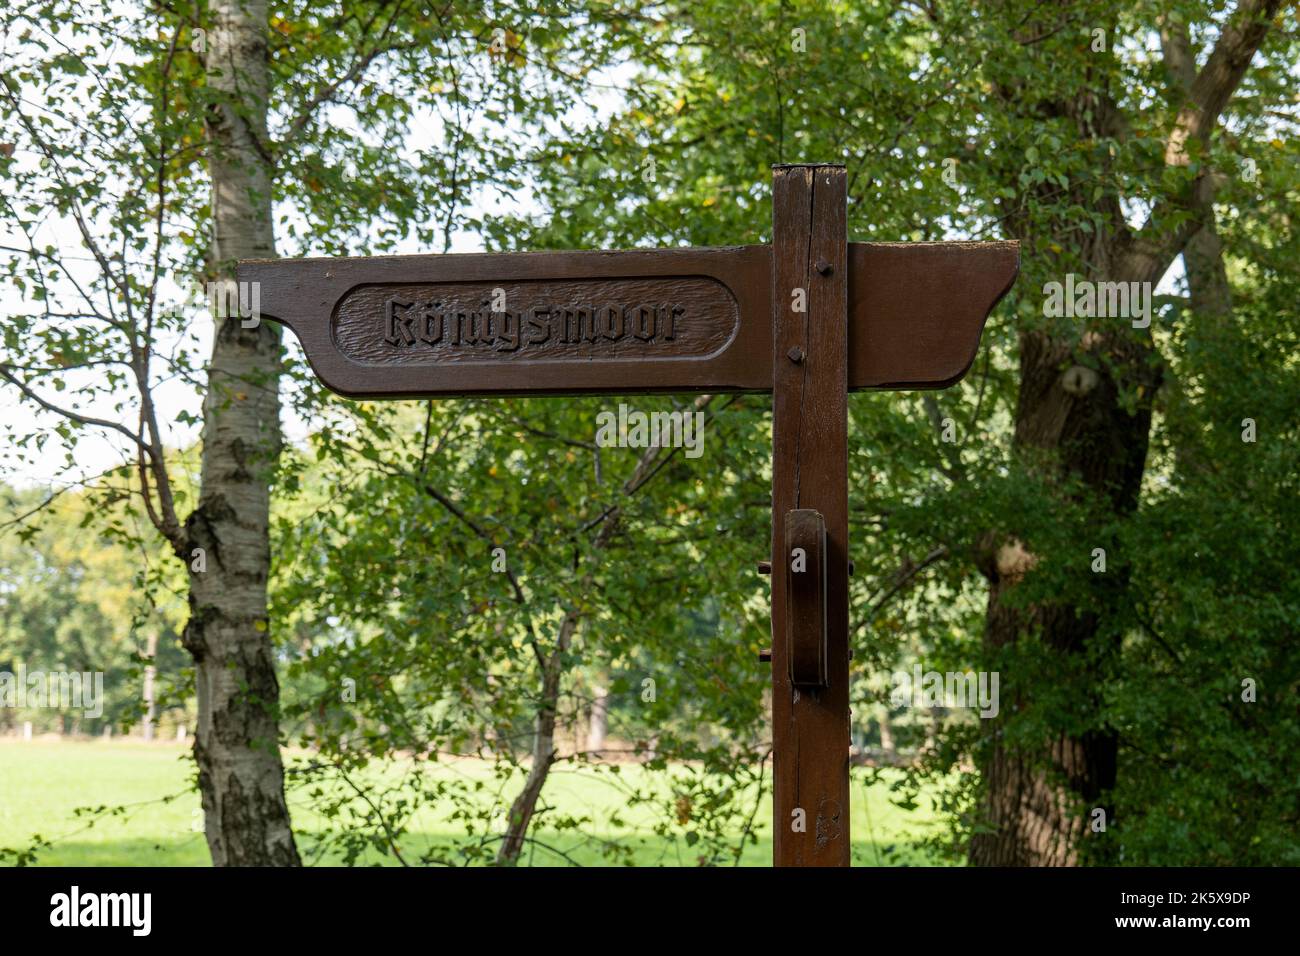 Sentiero per escursionismo segno per la palma Königsmoor allevata vicino Hagen im Bremischen, Cuxhaven, bassa Sassonia, Germania Foto Stock